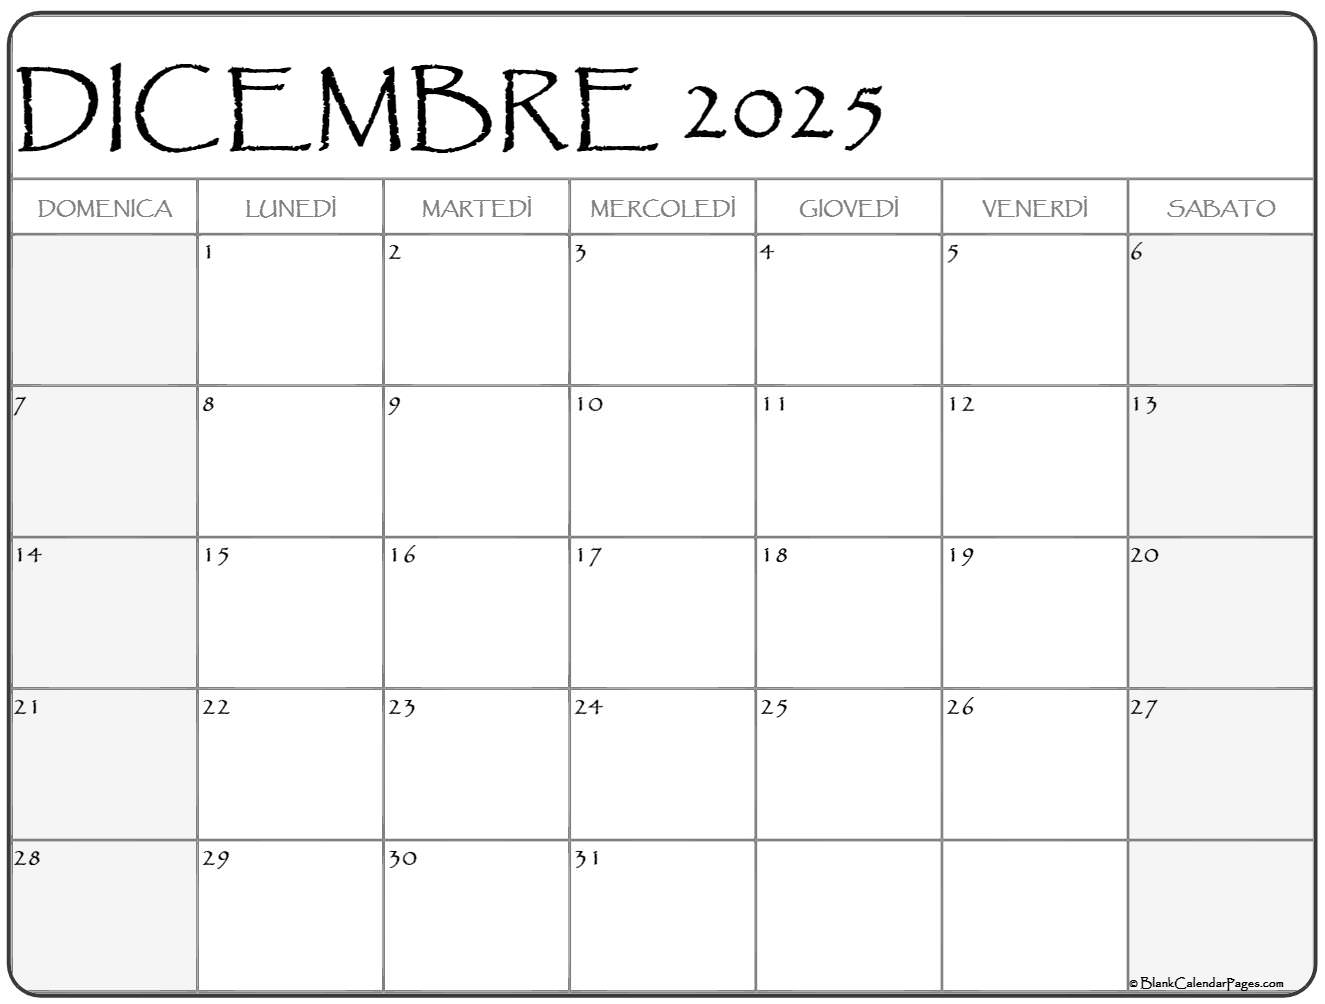 dicembre 2025 calendario gratis italiano Calendario dicembre